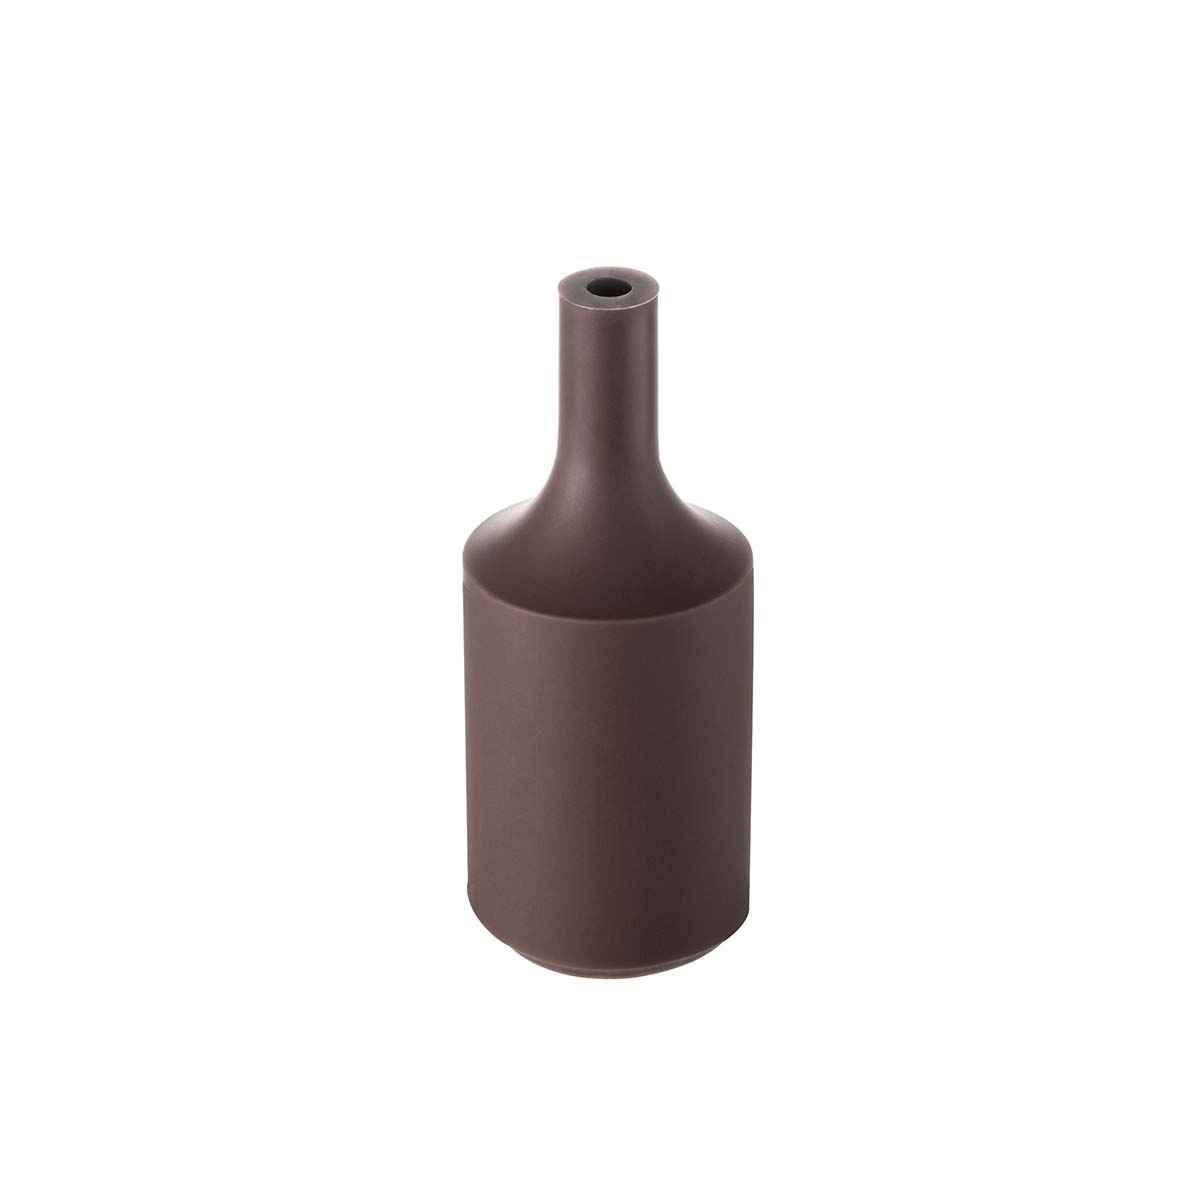 Tangla lighting - TLLH024BN - lamp holder silicon - E27 - bottle - brown